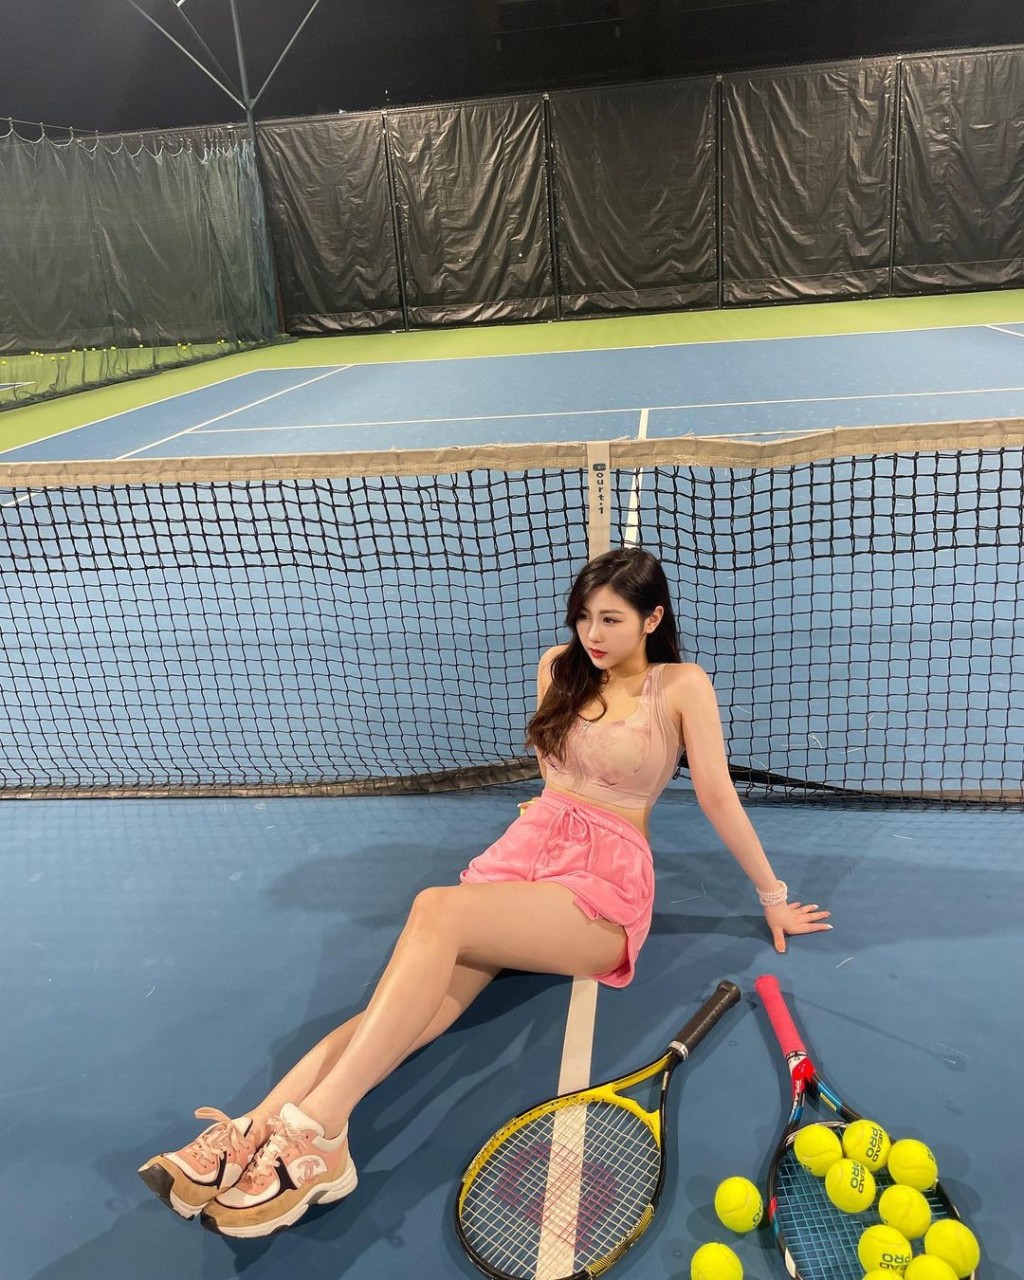 连打网球做运动亦要性感上阵。